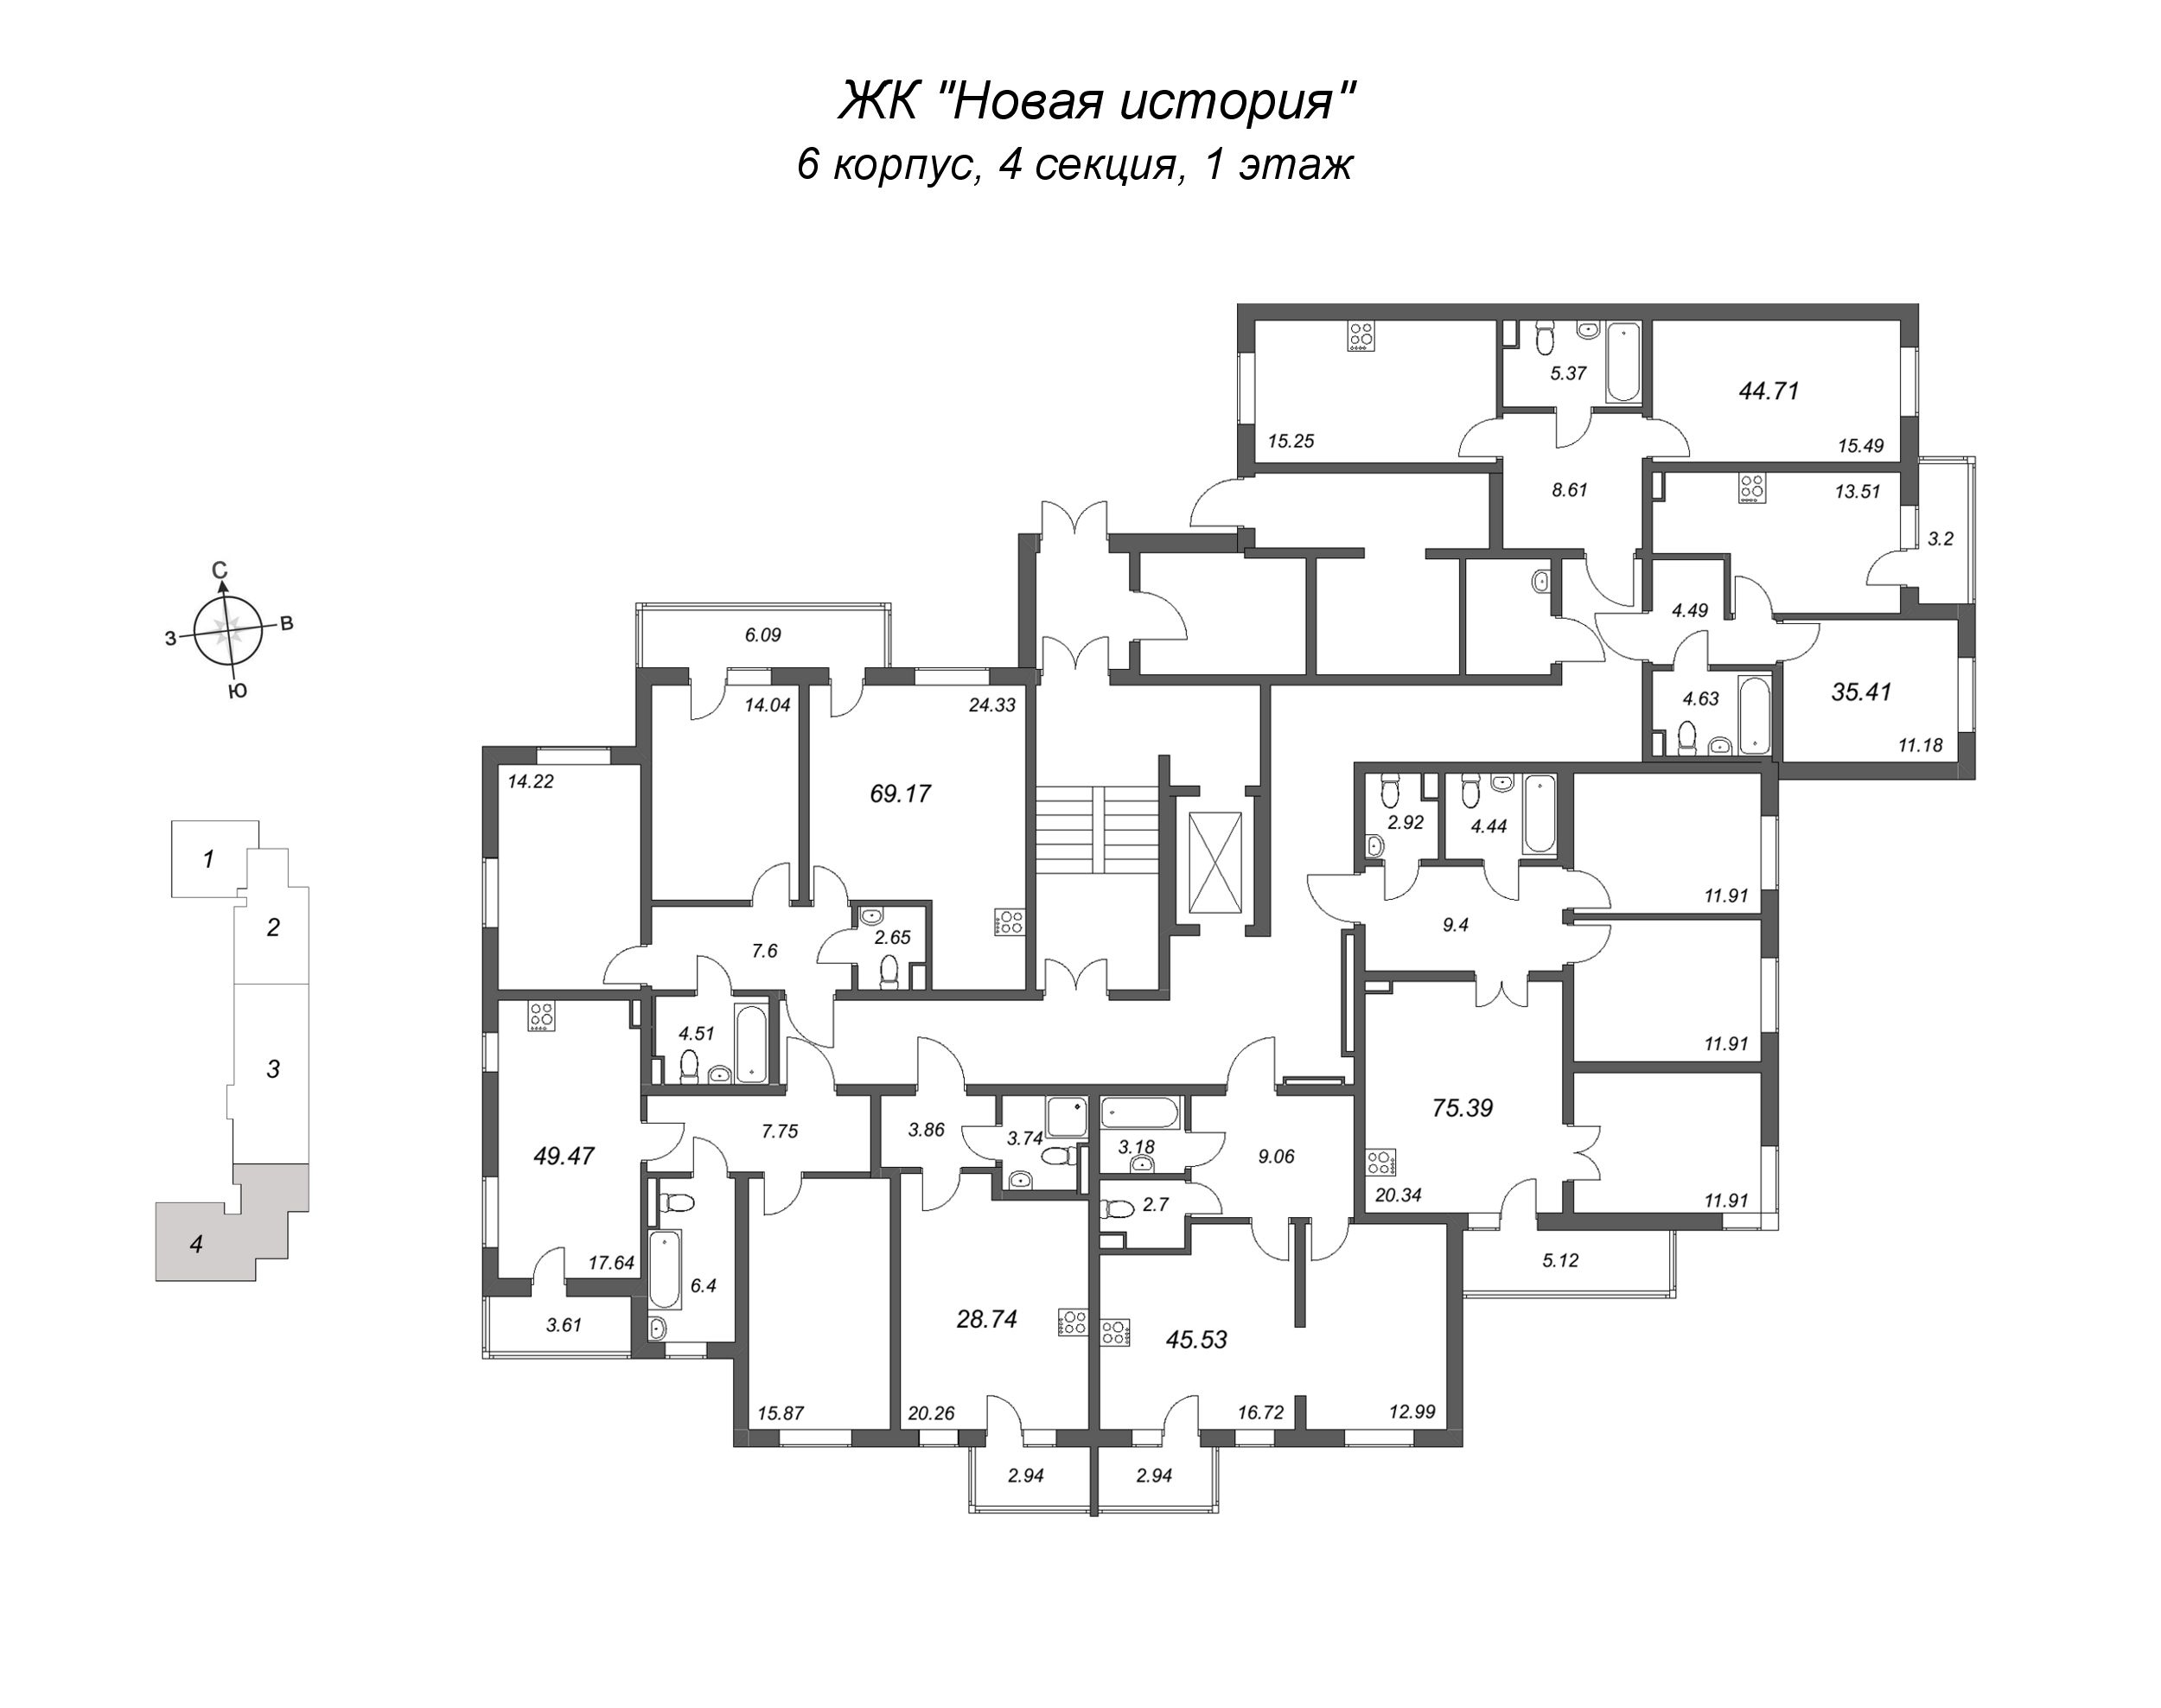 3-комнатная (Евро) квартира, 69.17 м² в ЖК "Новая история" - планировка этажа